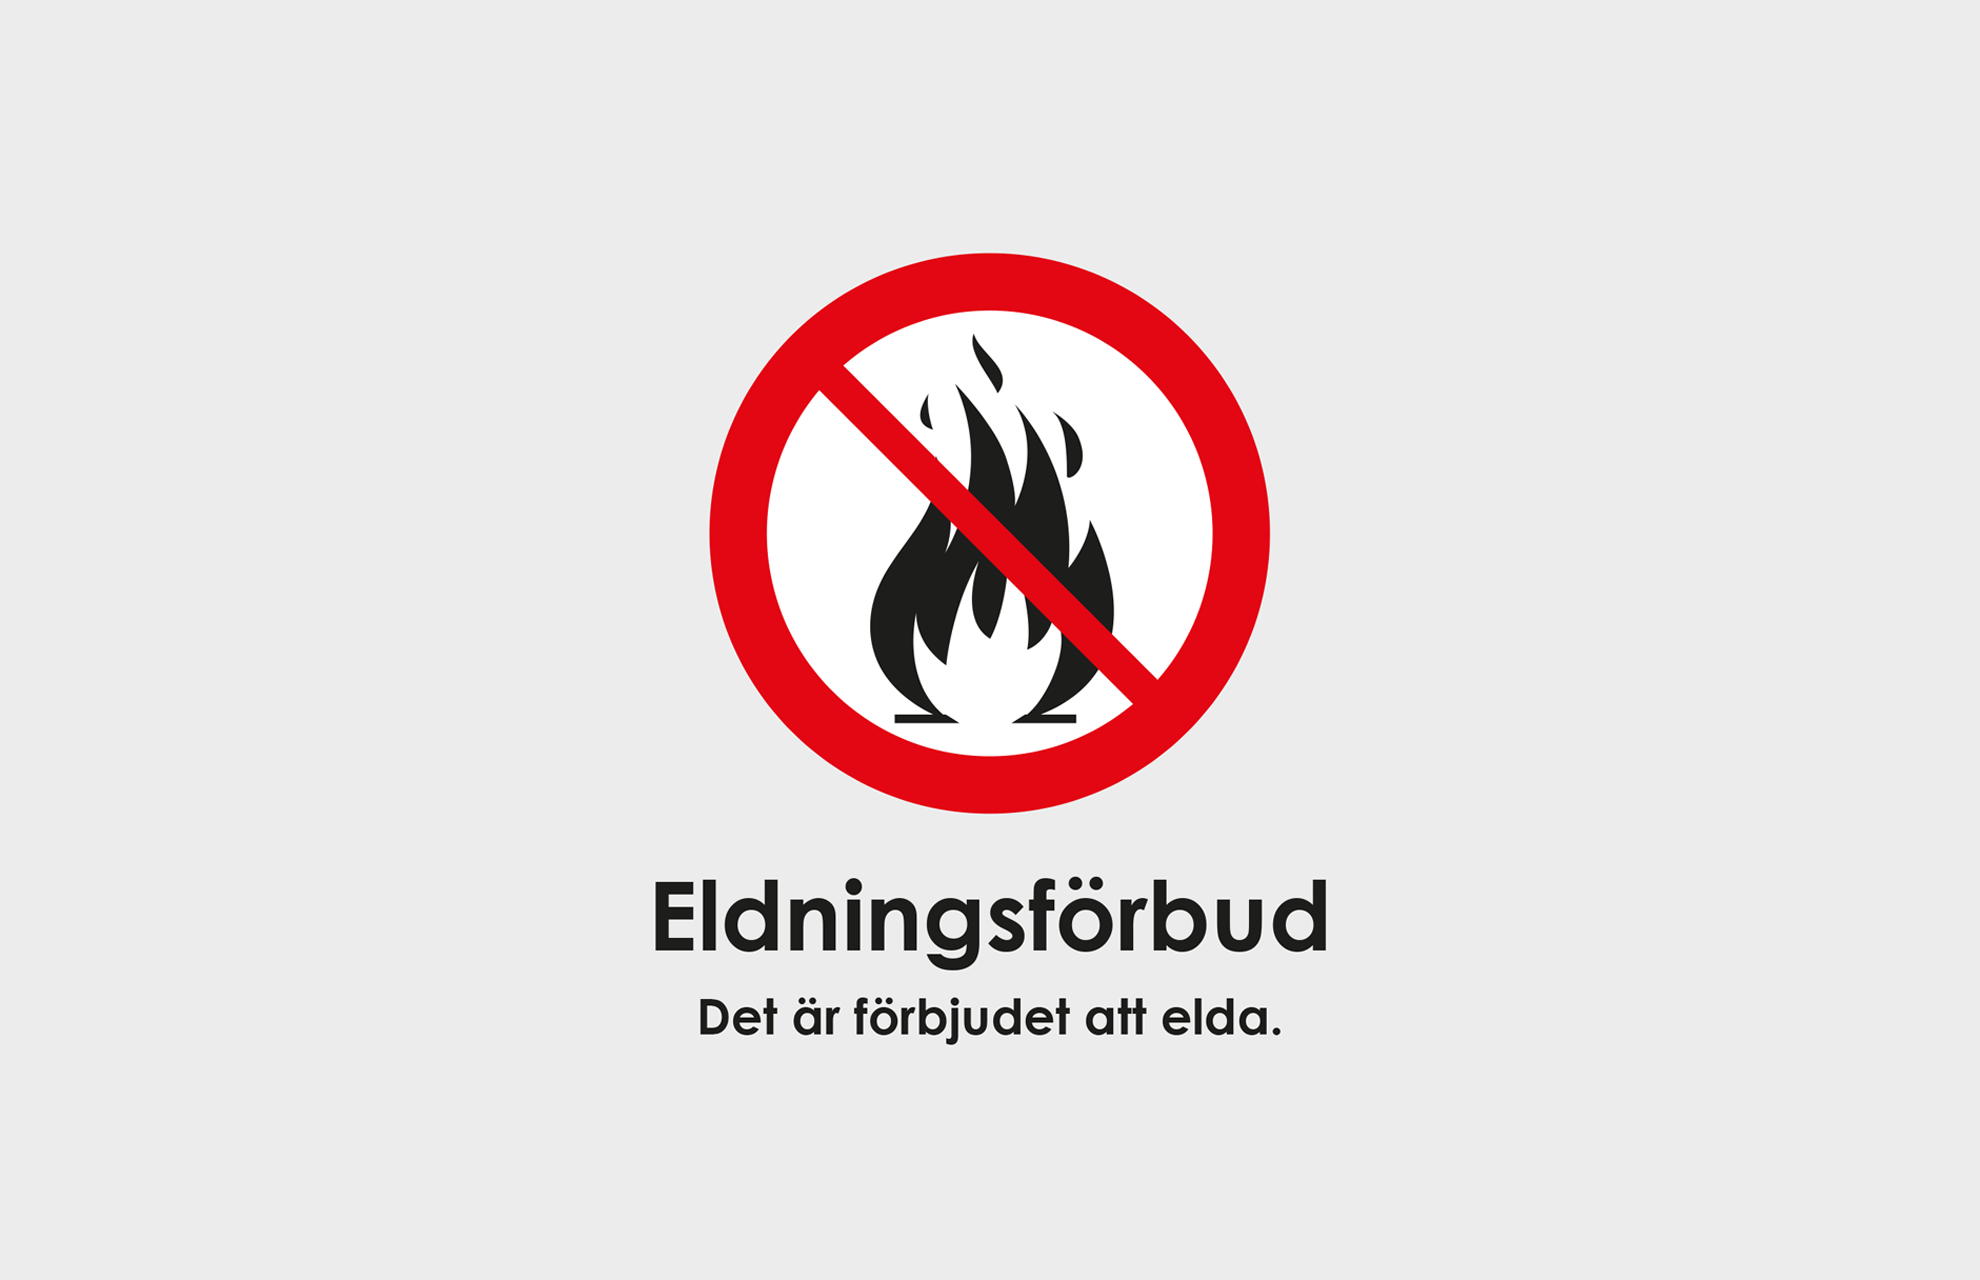 Text: Eldningsförbud. Det är förbjudet att elda.